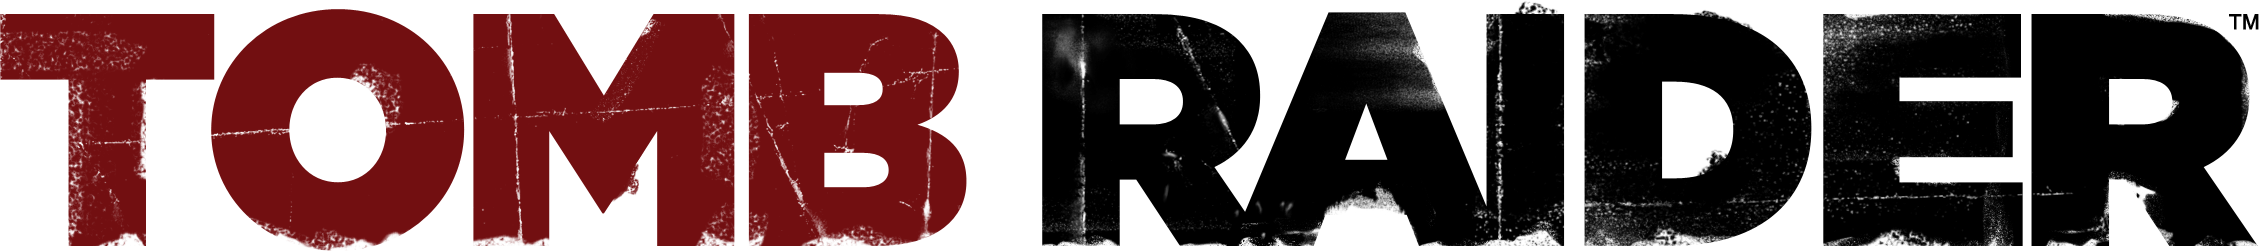 Tomb Raider Logosu PNG Kesim